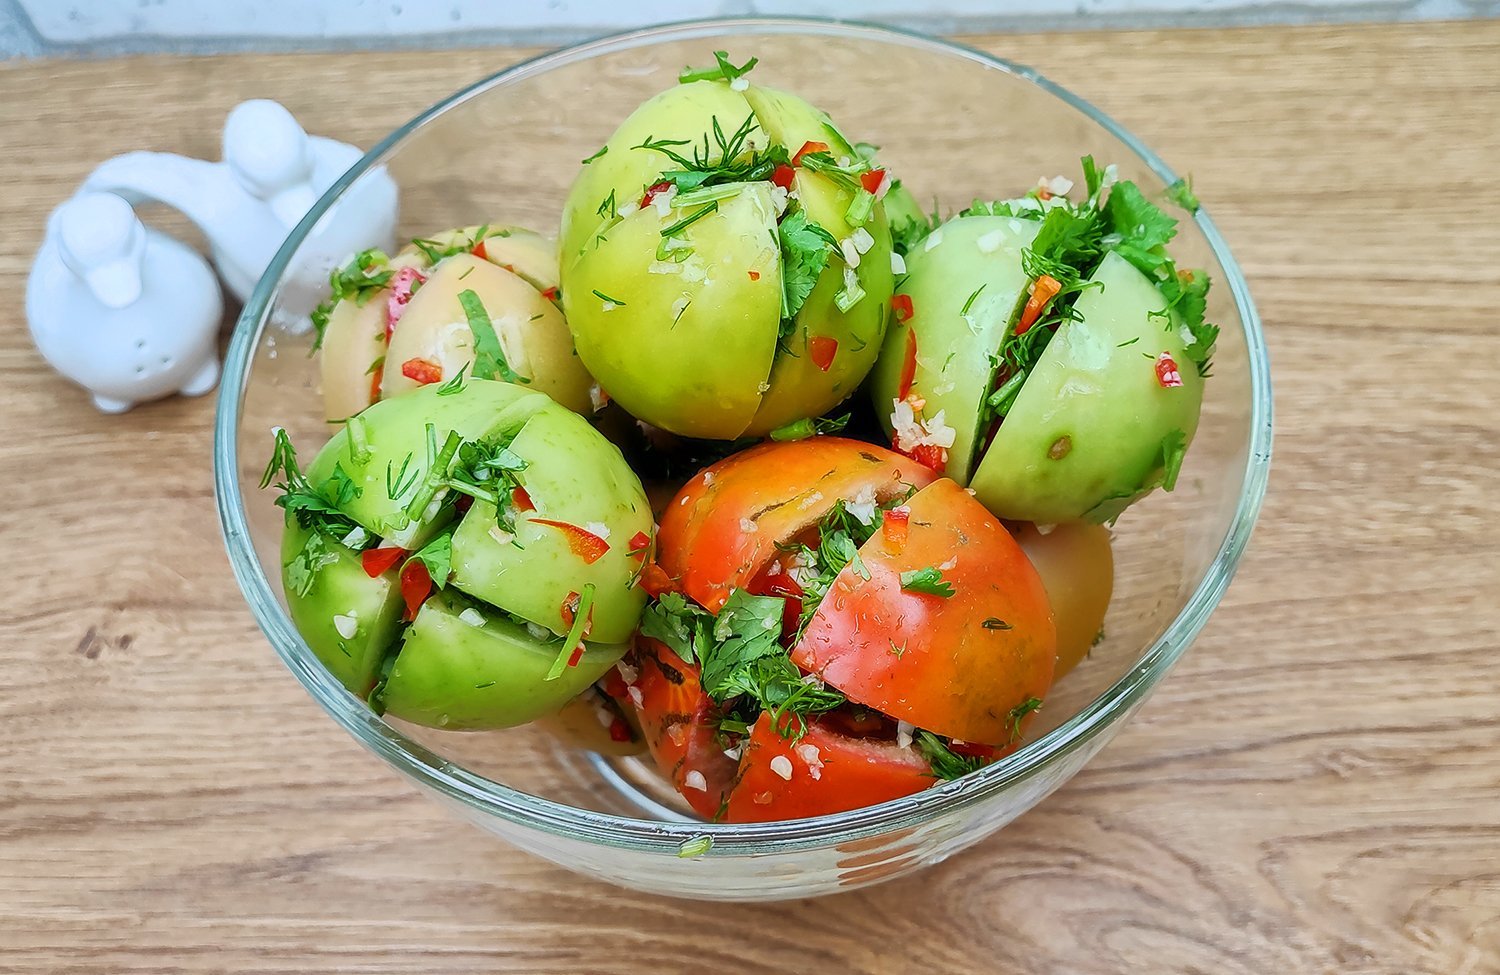 Рецепты из зеленых помидор на зиму рецепты с фото